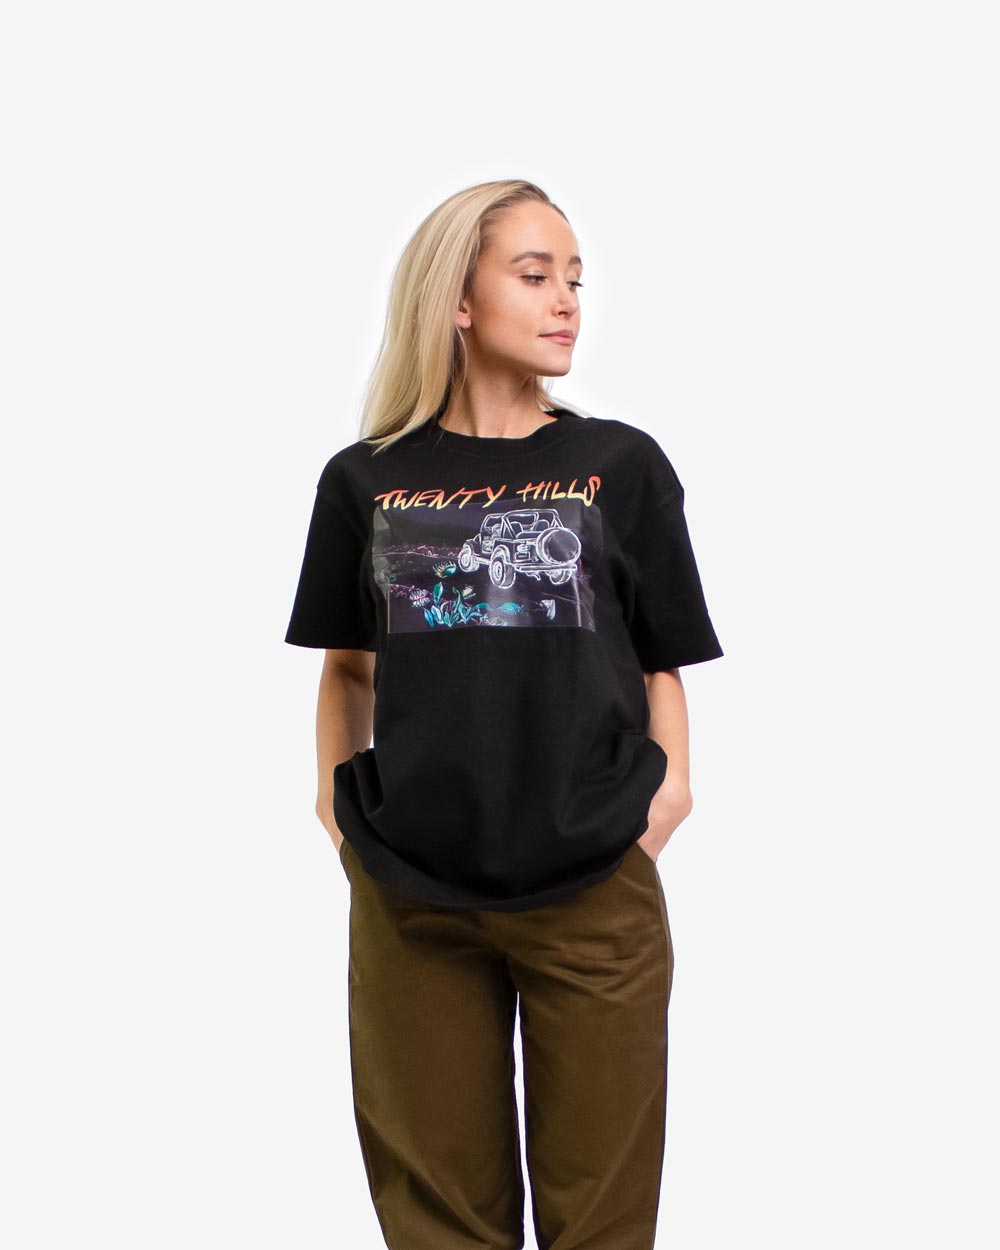 Classics (Hills) T-Shirt